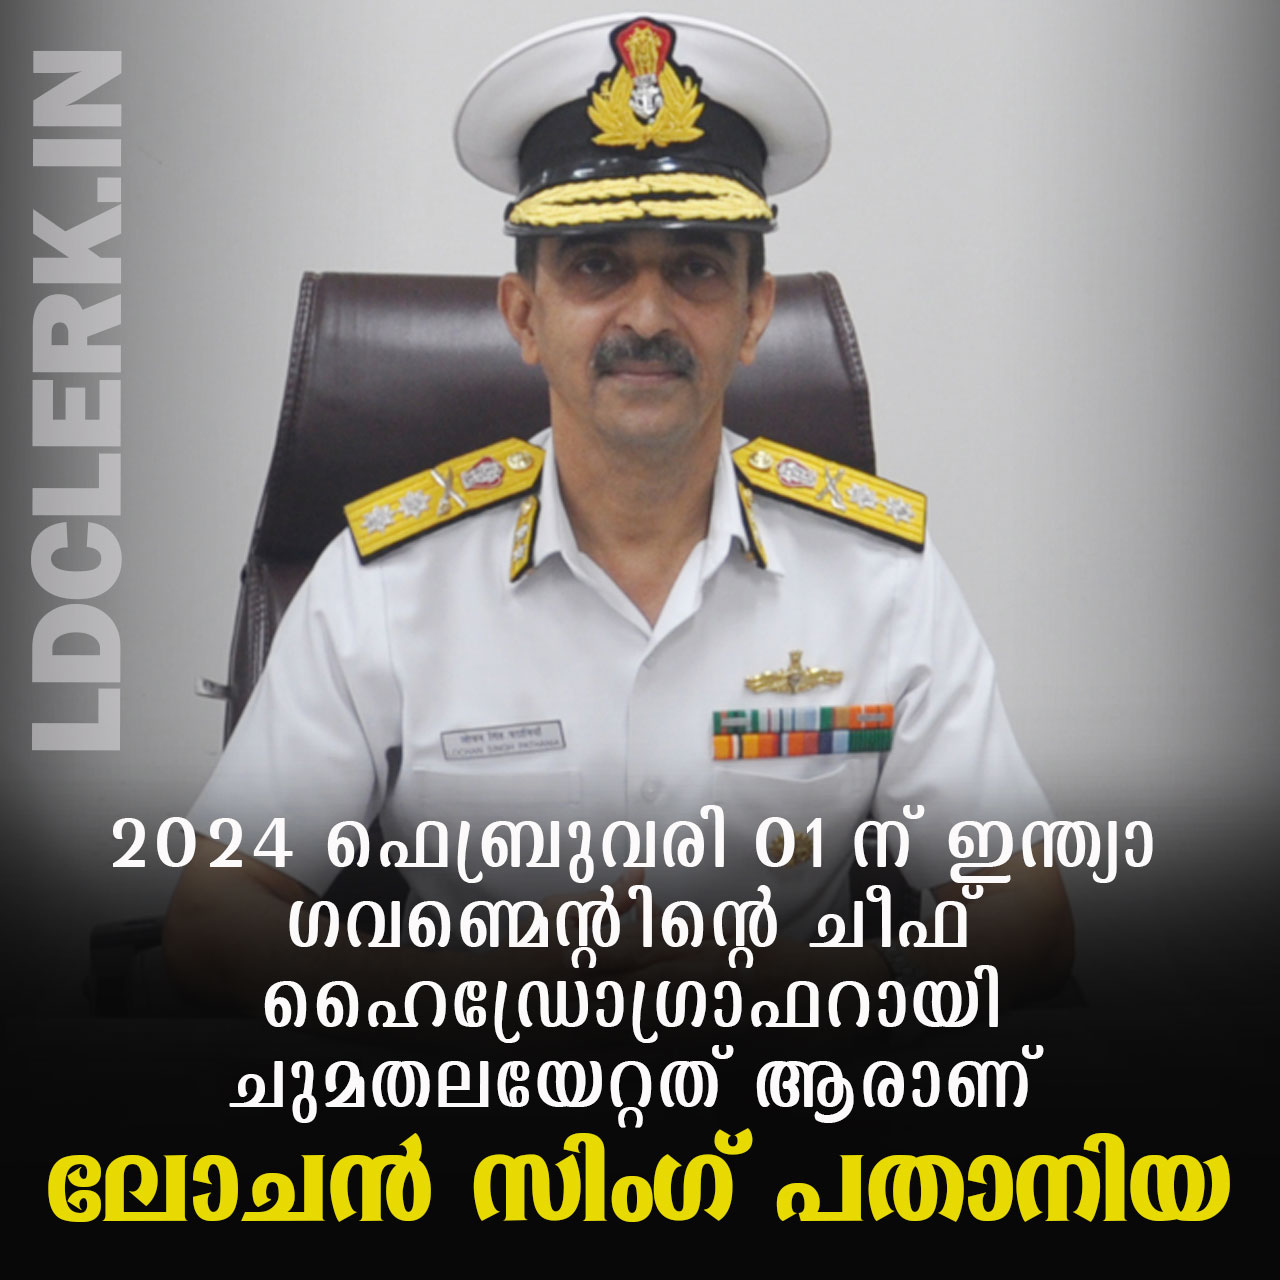 Vice Admiral Lochan Singh Patania